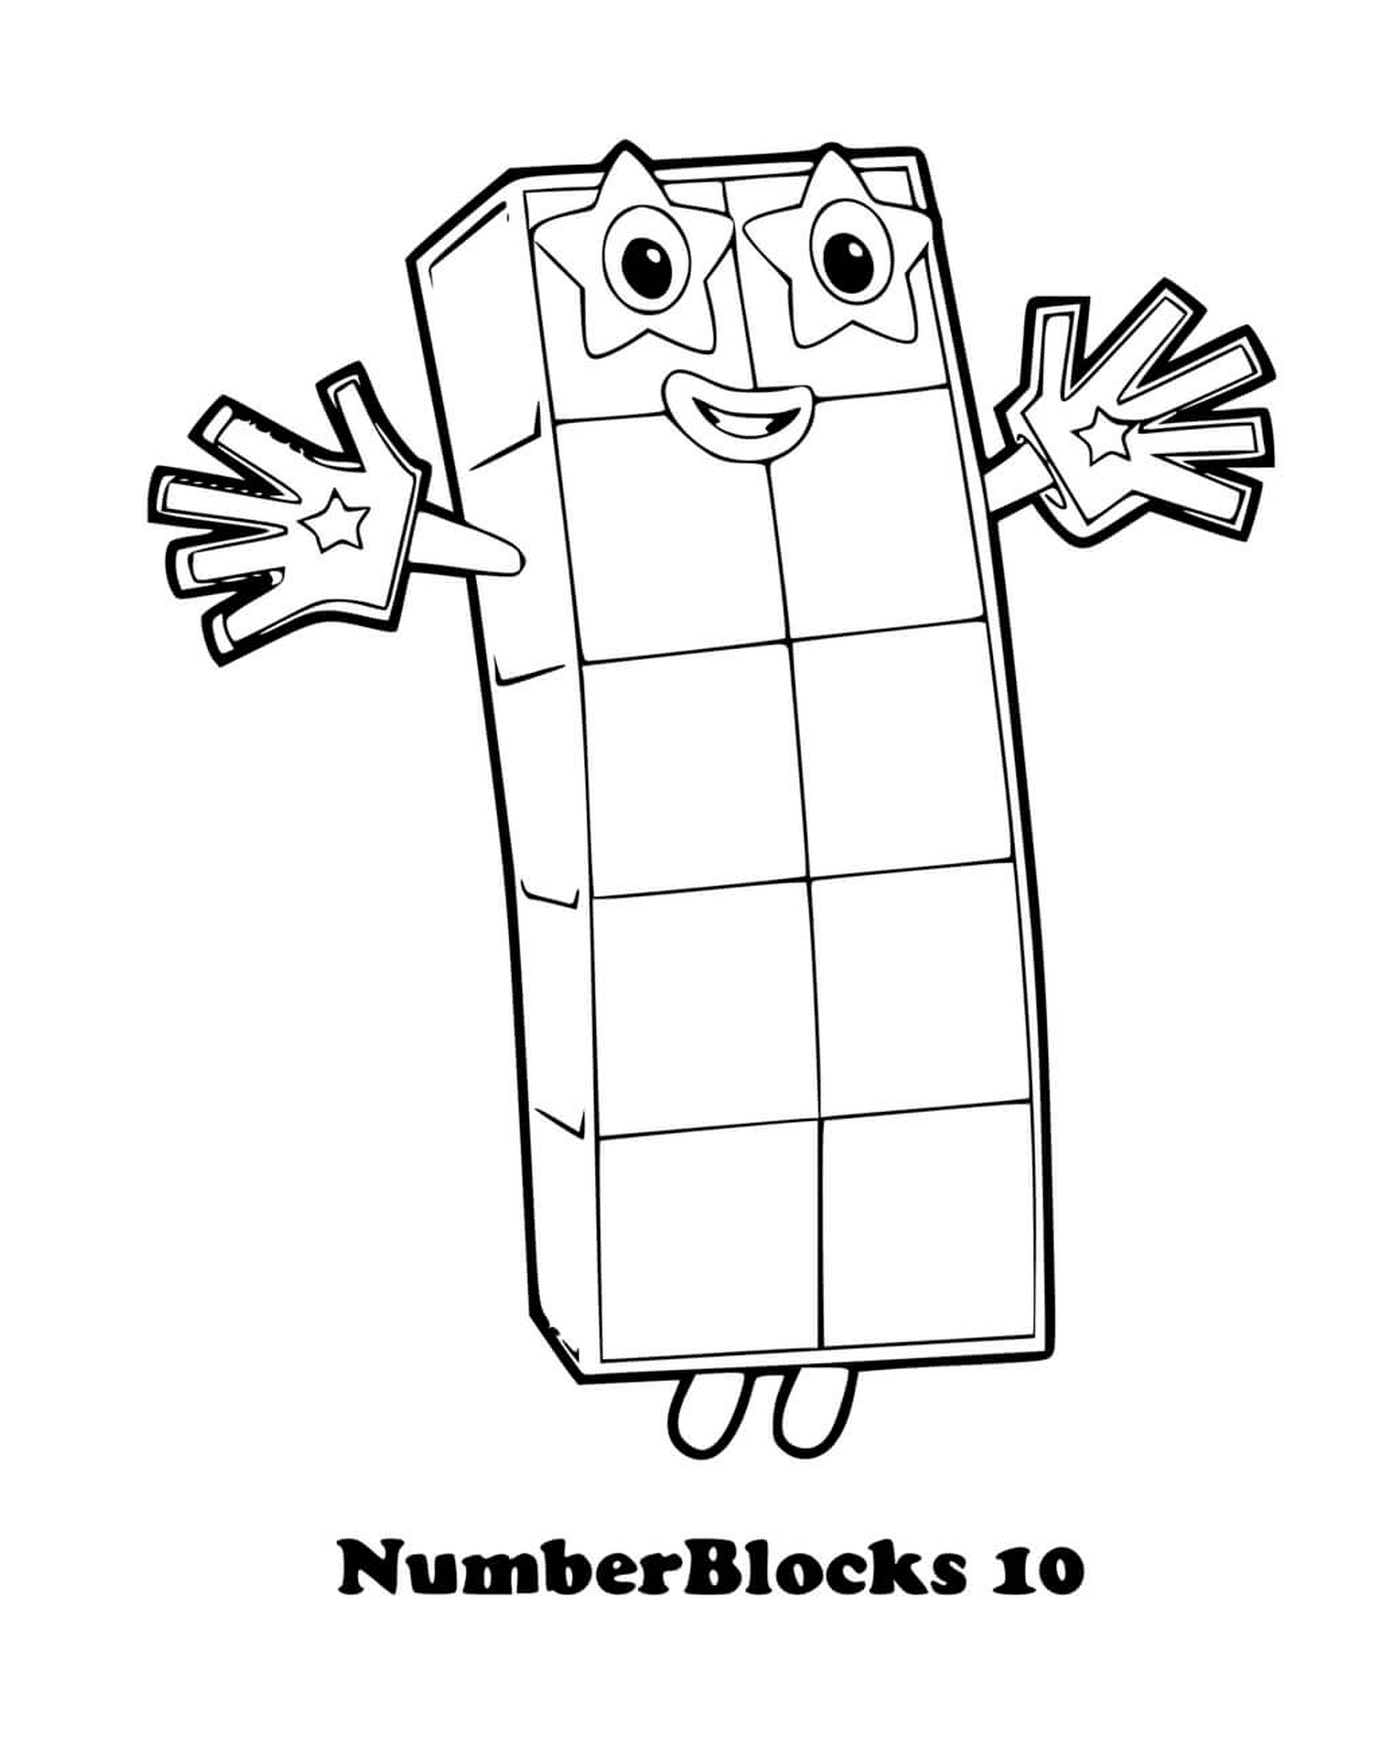  Numberblocks número 10, carácter animado 